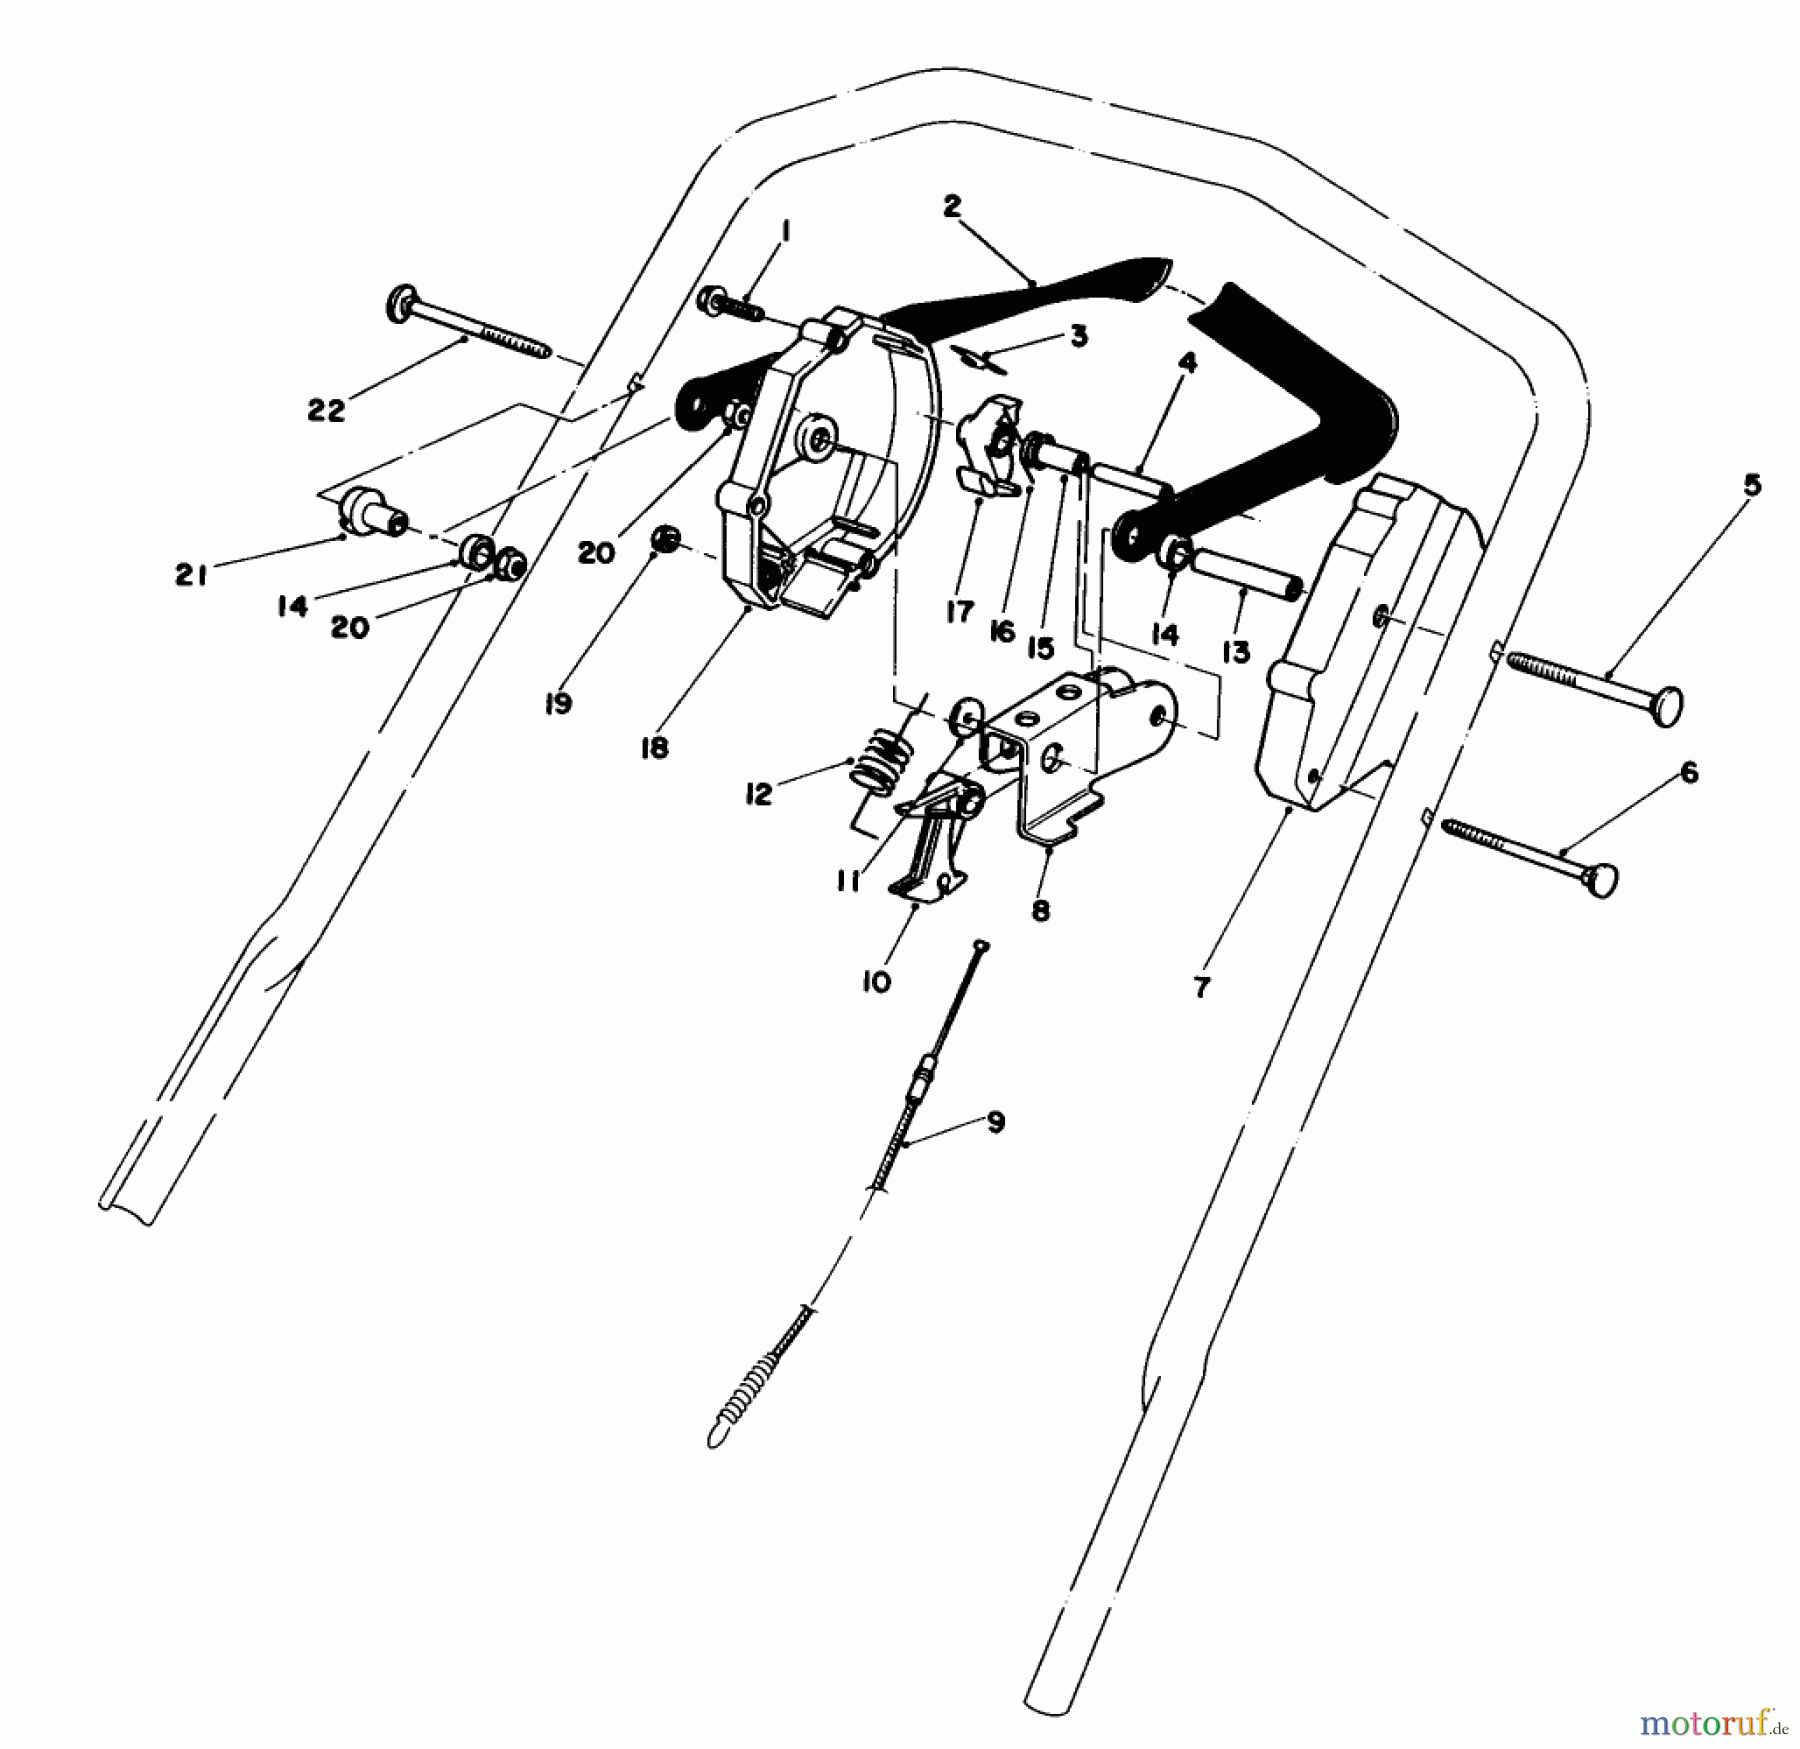  Toro Neu Mowers, Walk-Behind Seite 1 20584 - Toro Lawnmower, 1985 (5000001-4999999) CONTROL ASSEMBLY